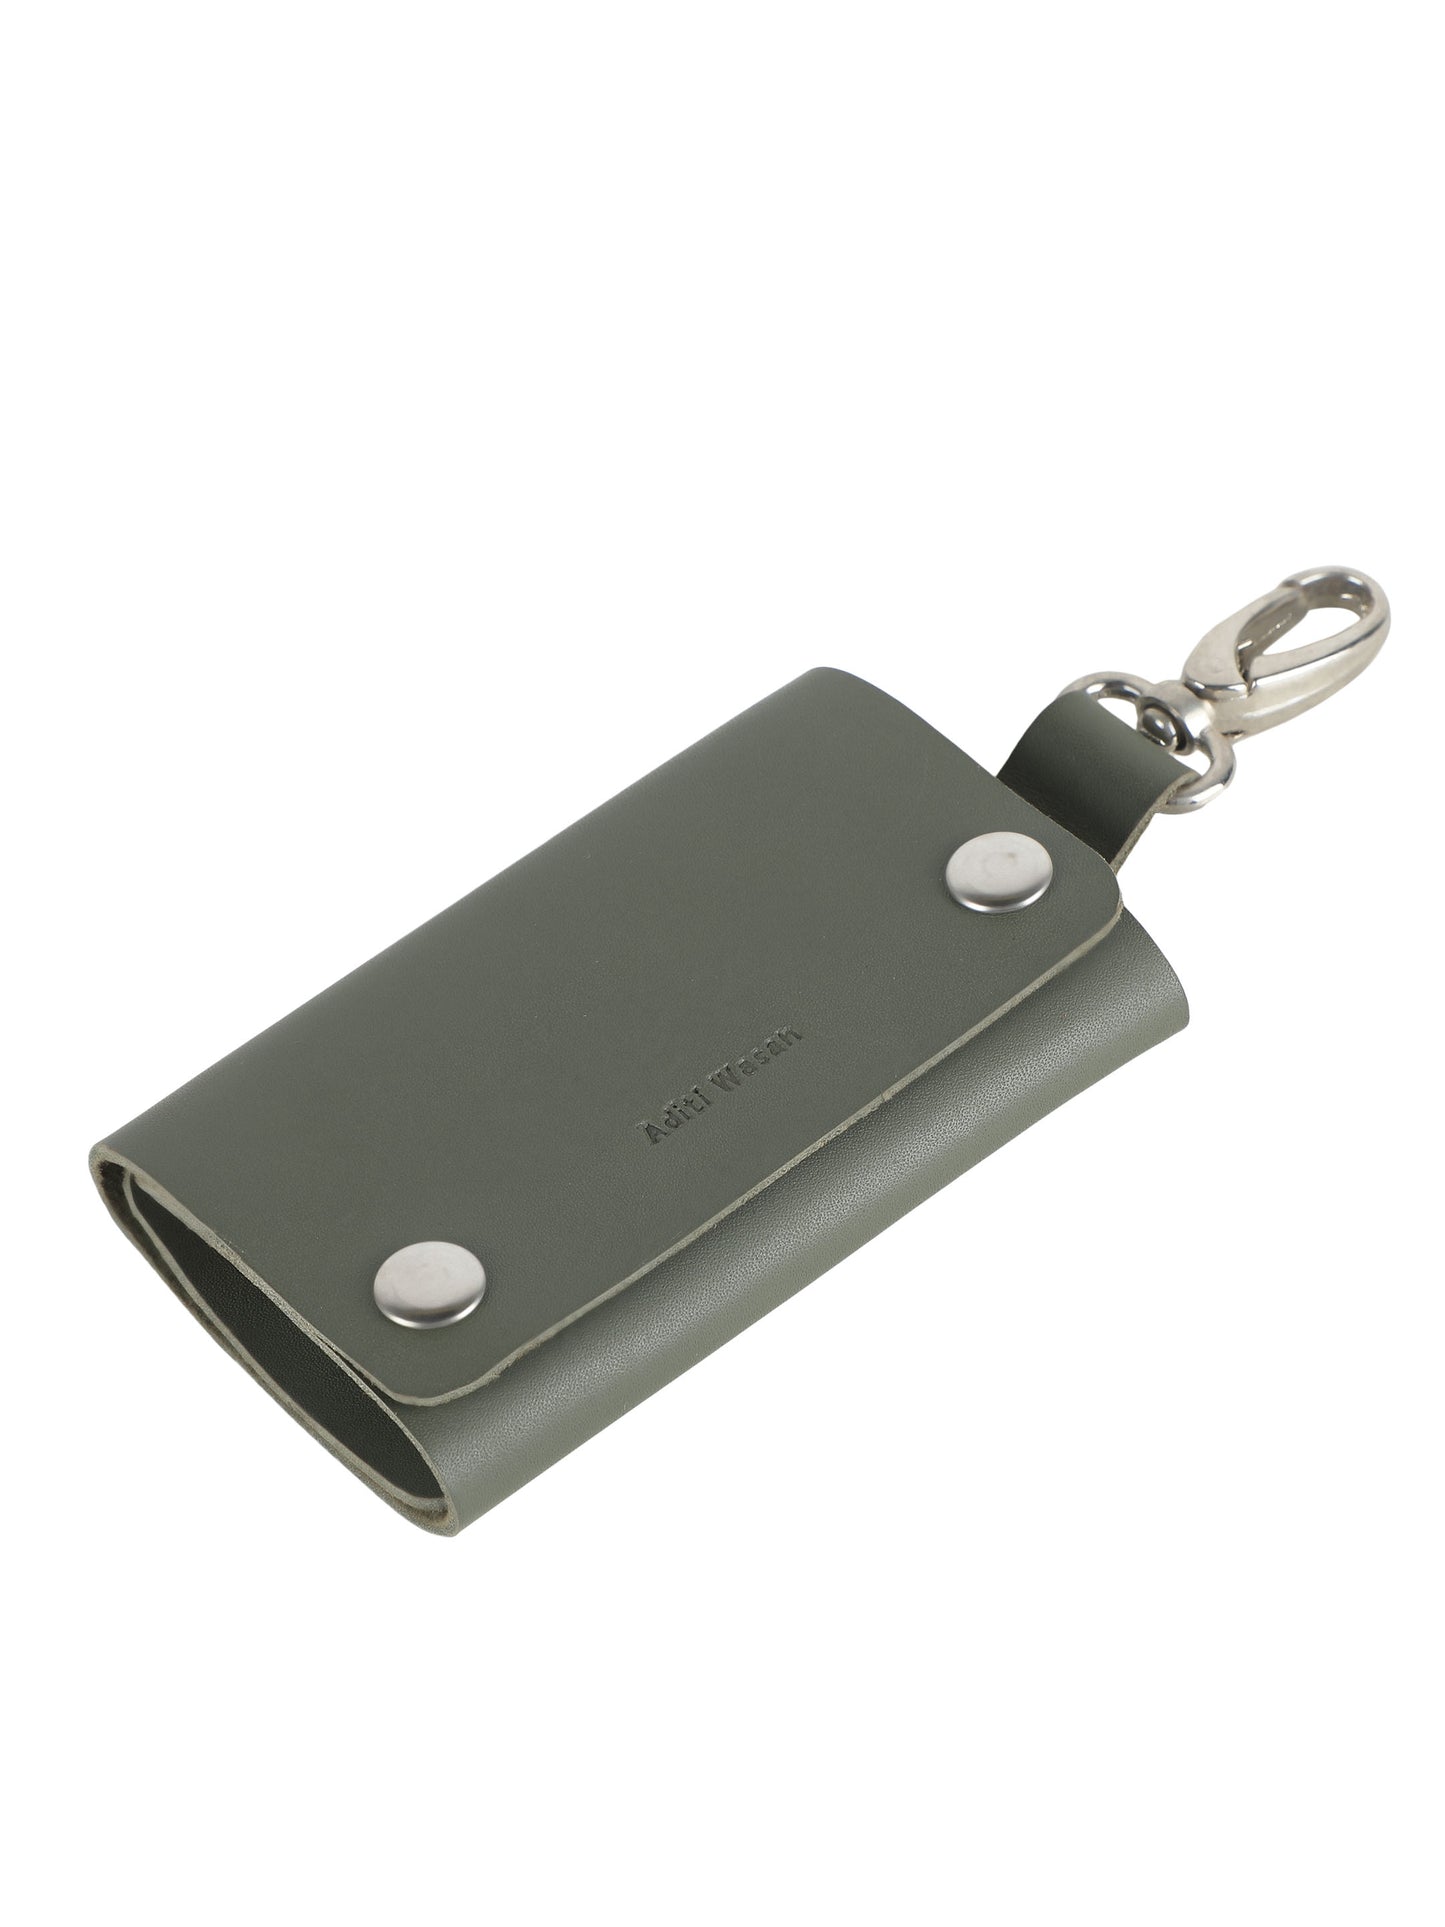 Genuine leather olive green key holder